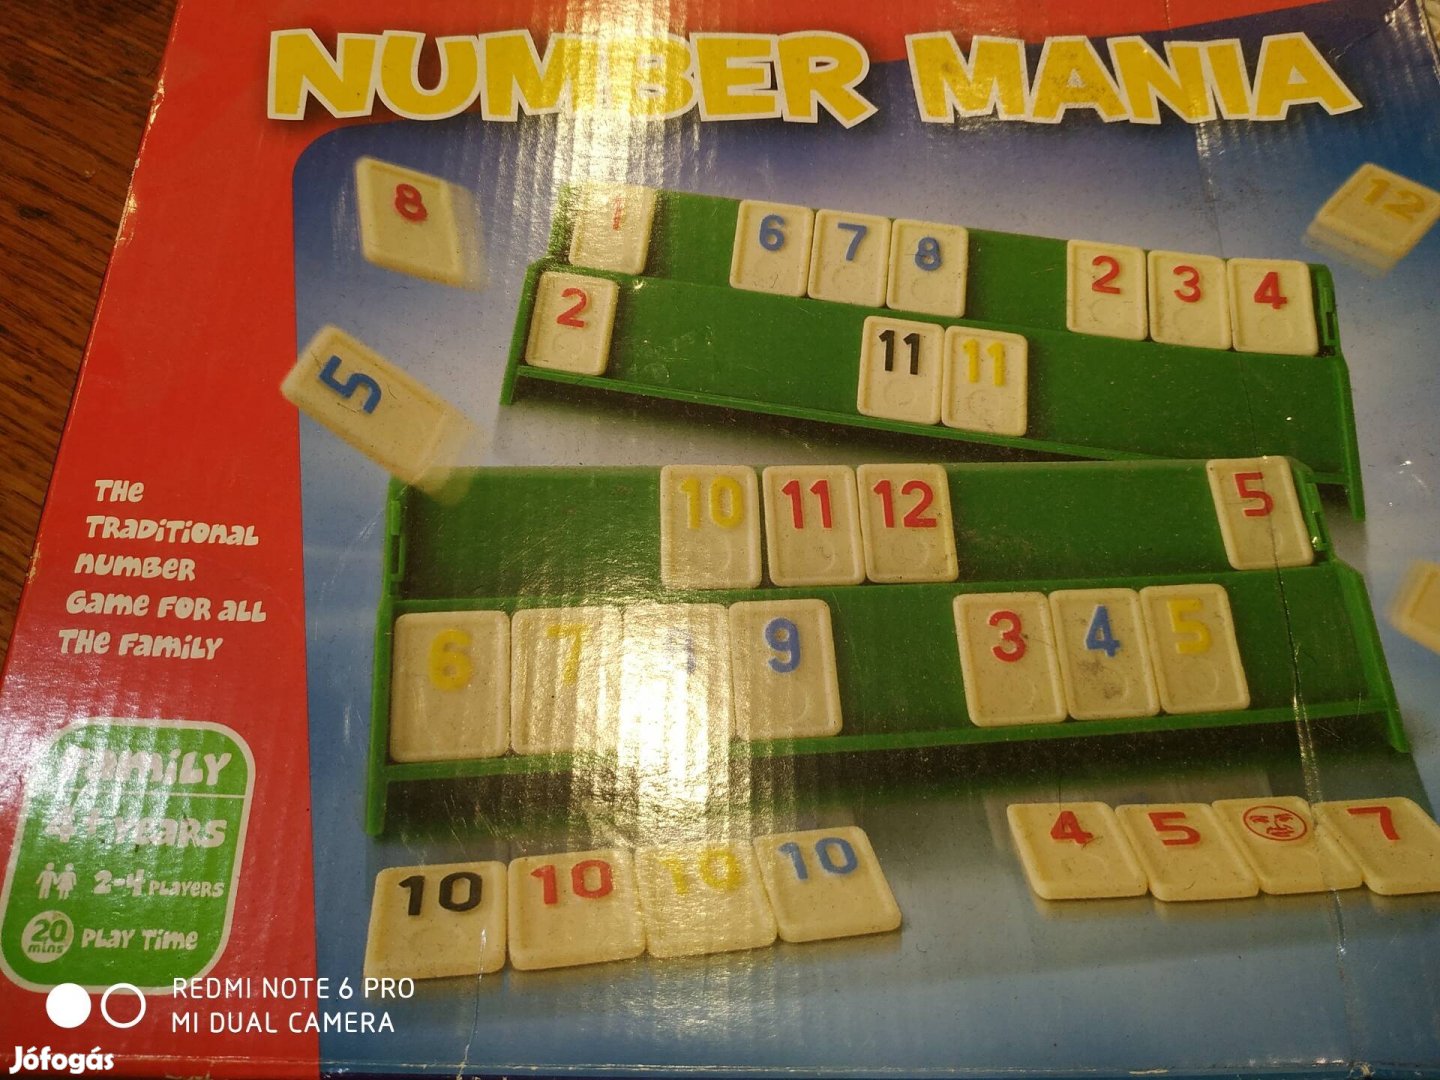 Number Mania társasjáték a számokkal.